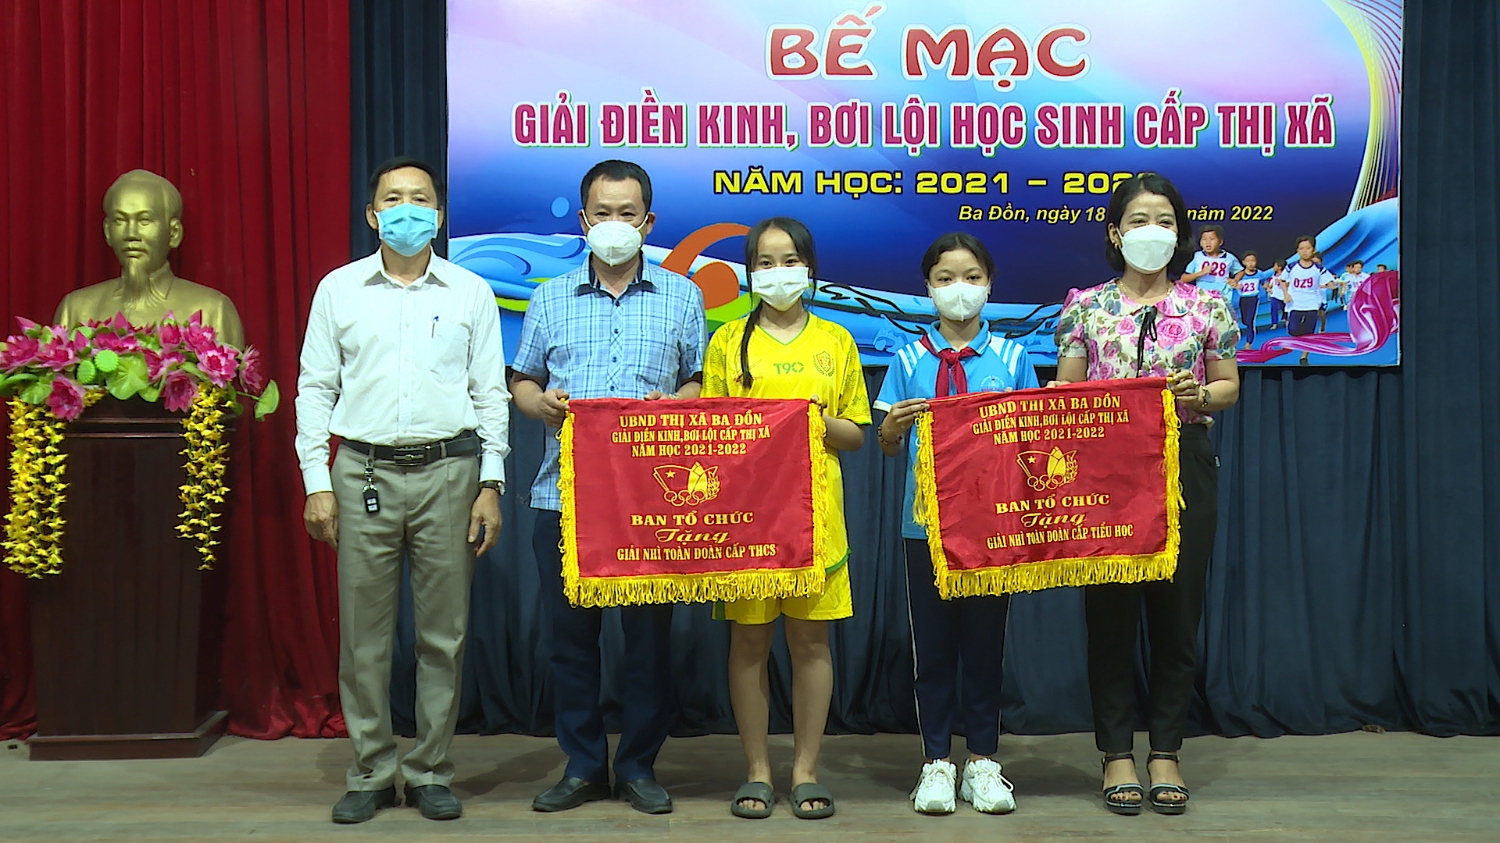 an tổ chức đã trao giải Nhì cấp THCS cho đoàn trường THCS Quảng Phúc và cấp Tiểu học cho đoàn trường TH Quảng Phong